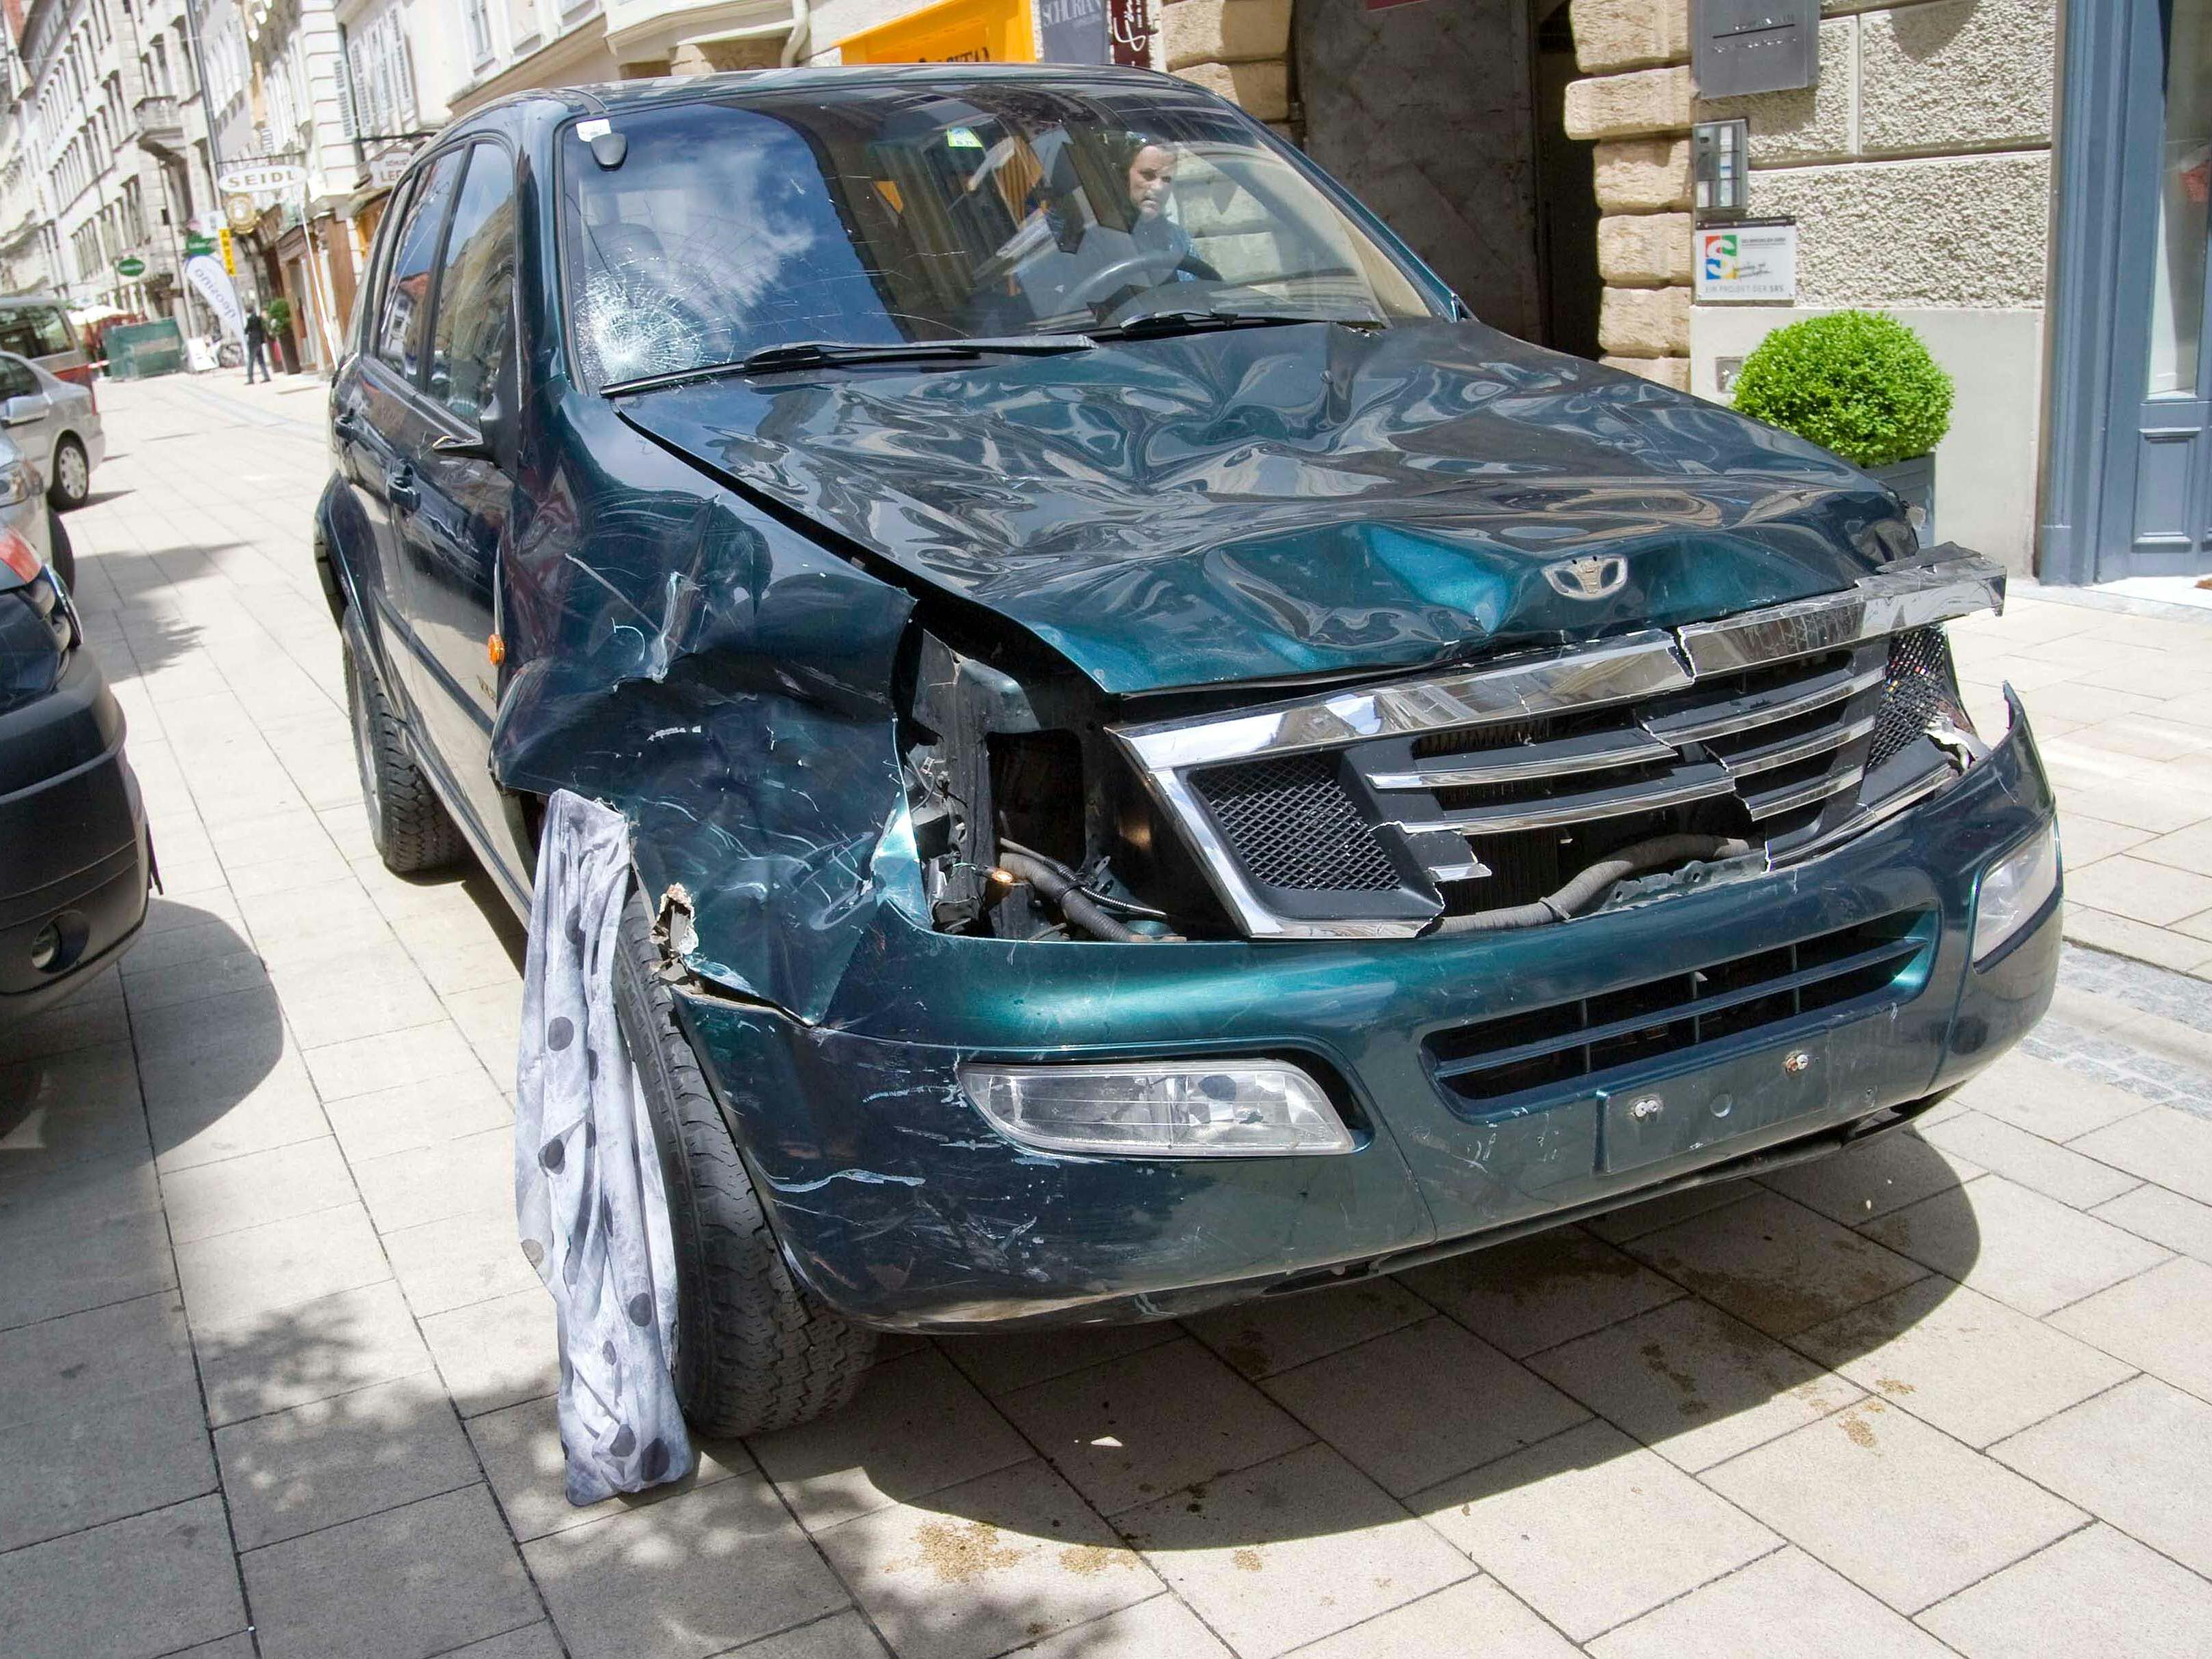 Amokfahrt in Grazer-Innenstadt forderte mindestens zwei Opfer.